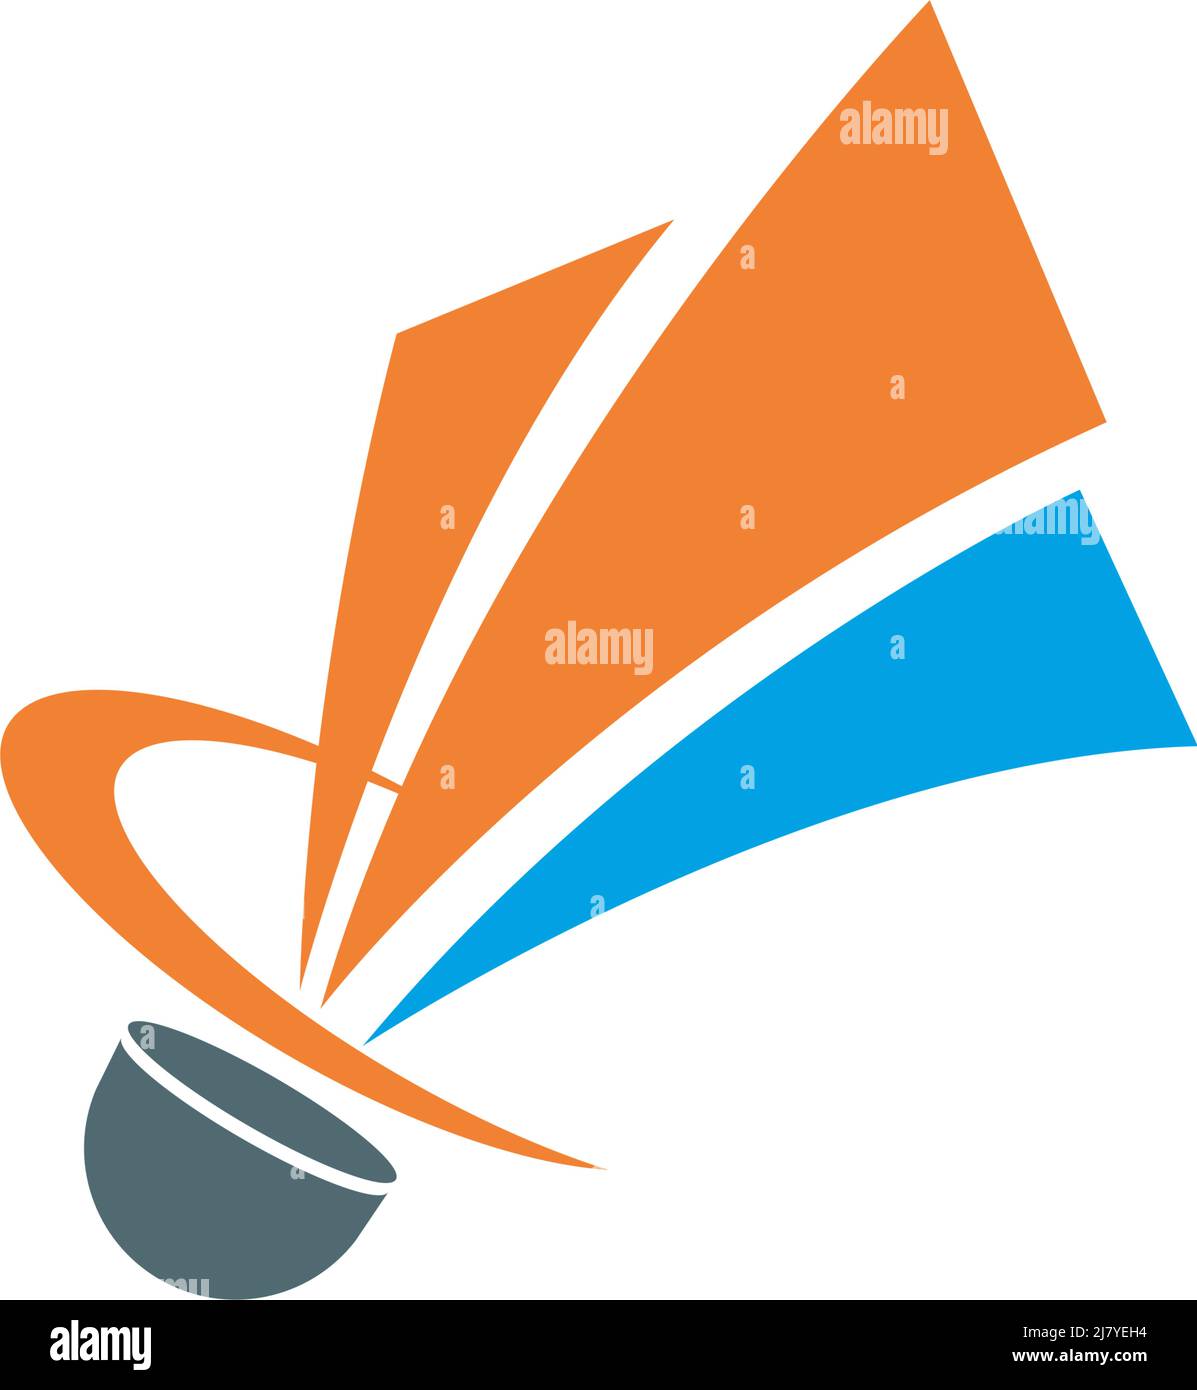 Badminton shuttlecock icon logo illustration vector Stock Vector Image ...